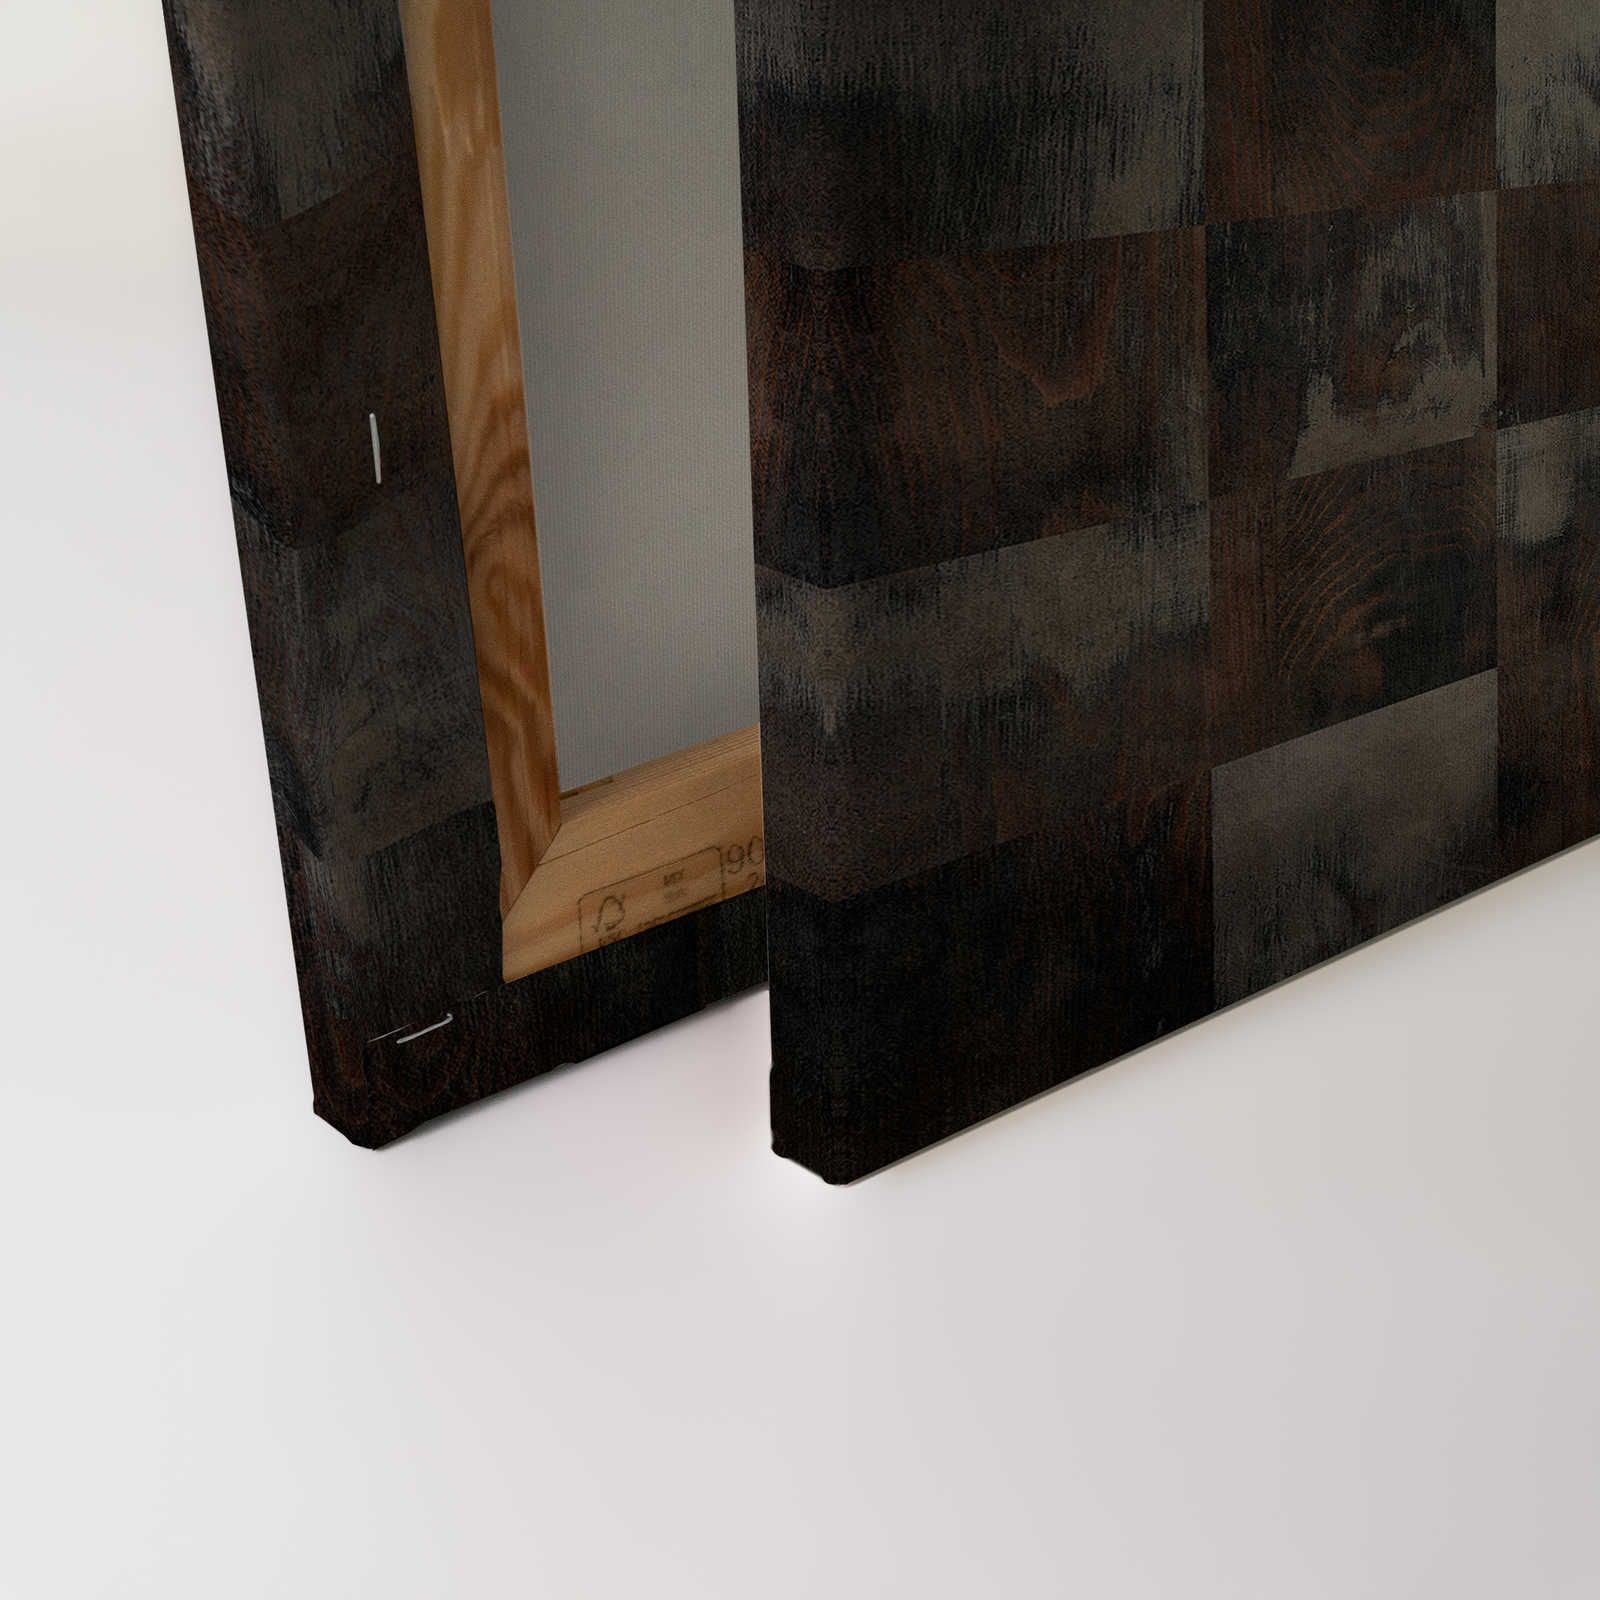             Fabriek 2 - Wood look canvas foto ruitpatroon in used look - 0,90 m x 0,60 m
        